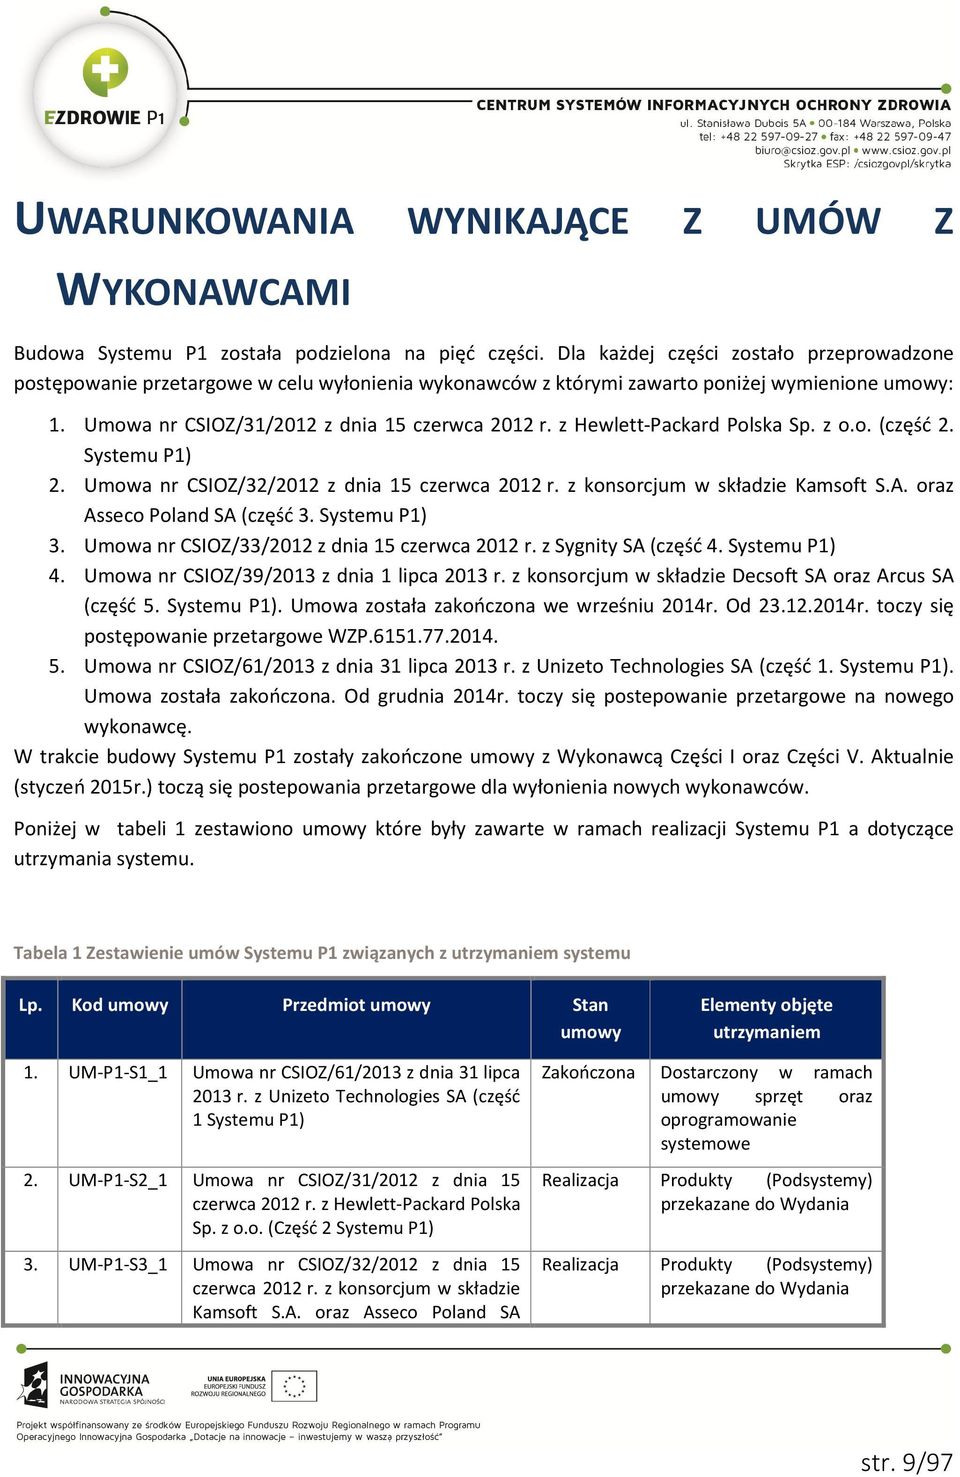 z Hewlett-Packard Polska Sp. z o.o. (część 2. Systemu P1) 2. Umowa nr CSIOZ/32/2012 z dnia 15 czerwca 2012 r. z konsorcjum w składzie Kamsoft S.A. oraz Asseco Poland SA (część 3. Systemu P1) 3.